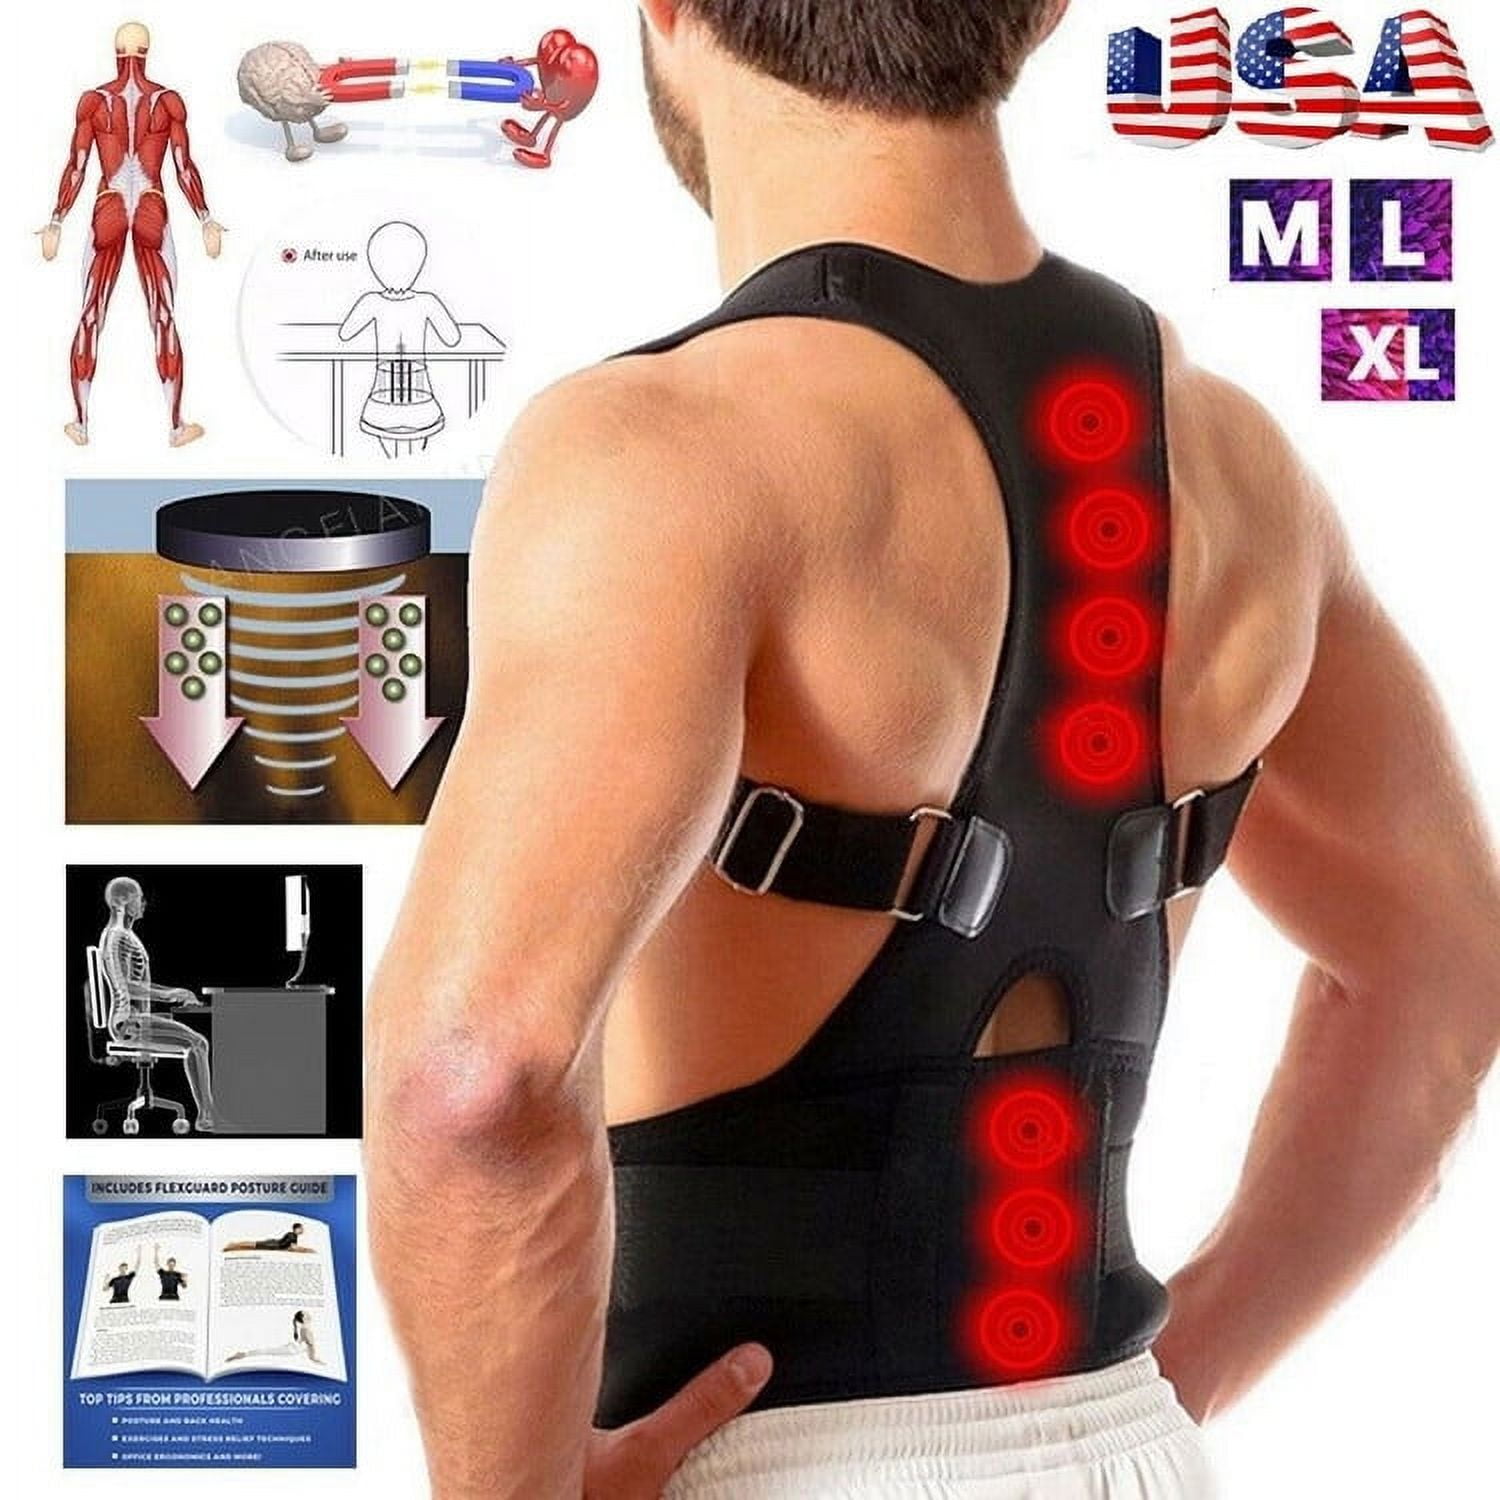 2020 Upgraded Magnetic Body Back Brace Posture Corrector Fully Adjustable  Brace Improves Neck Shoulder Spine Pain Relief Support Strap For Women Men